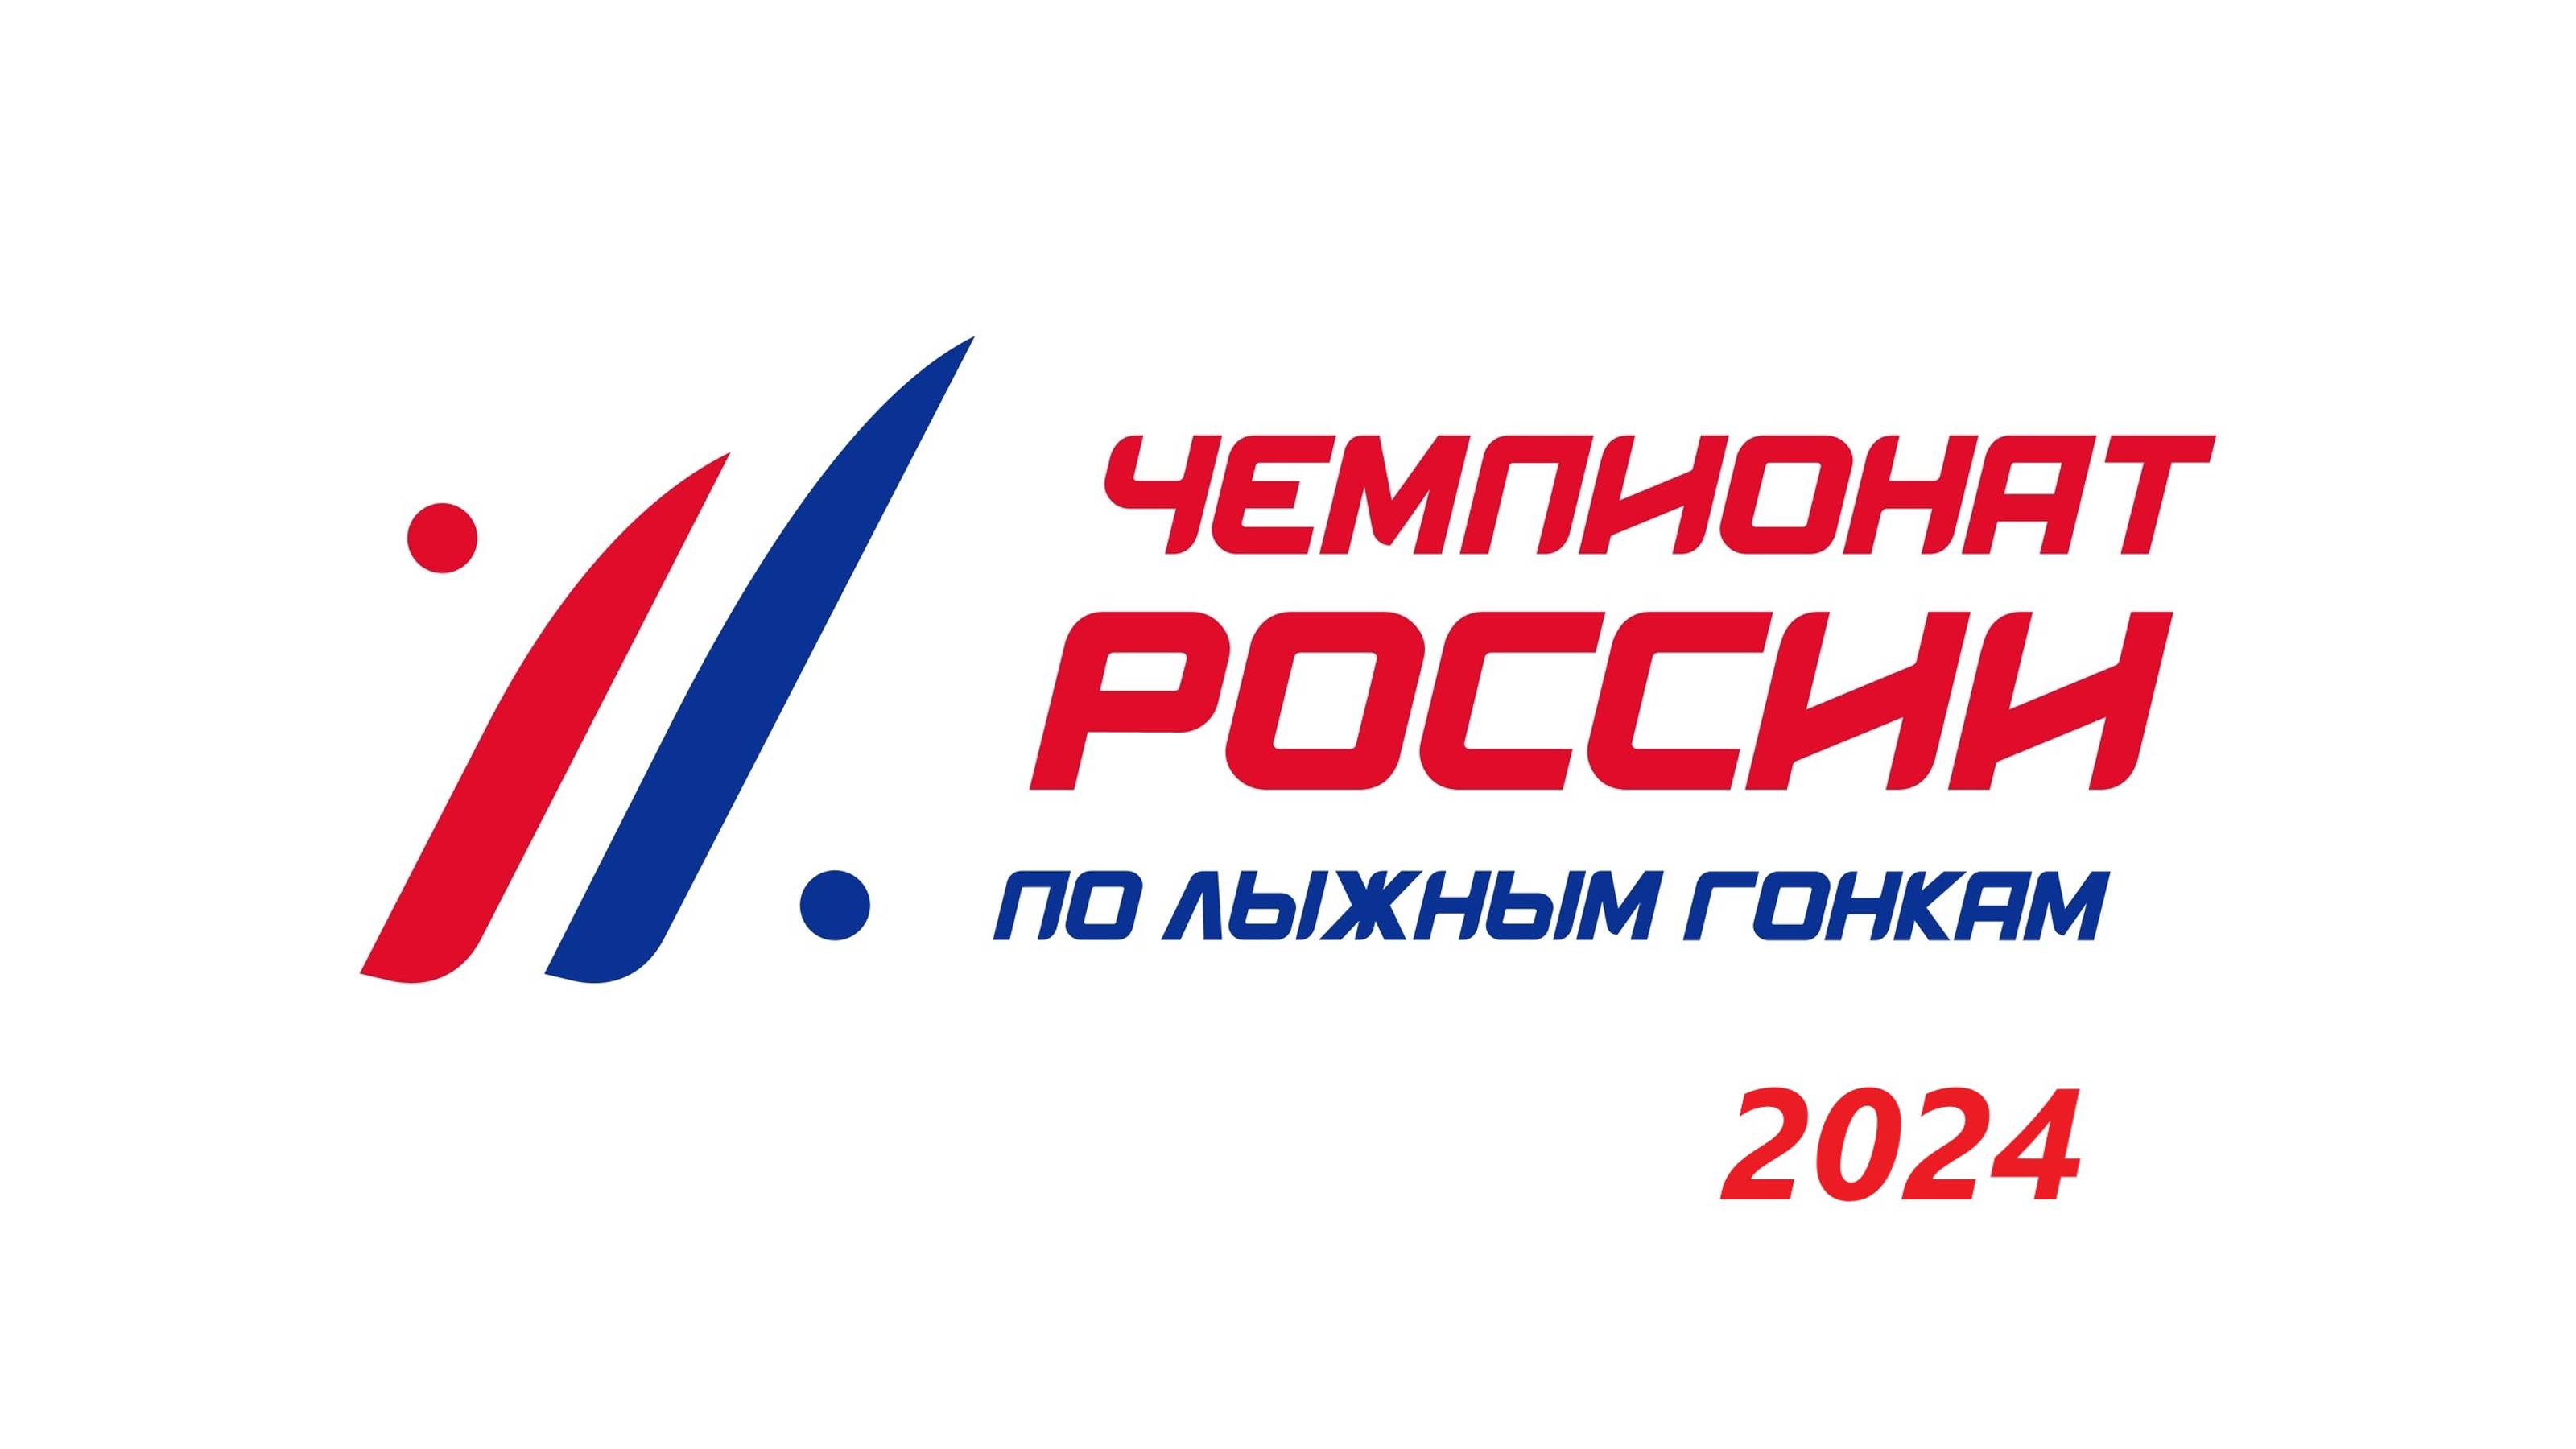 Женщины. Скиатлон. Малиновка (Архангельская область) 2024.